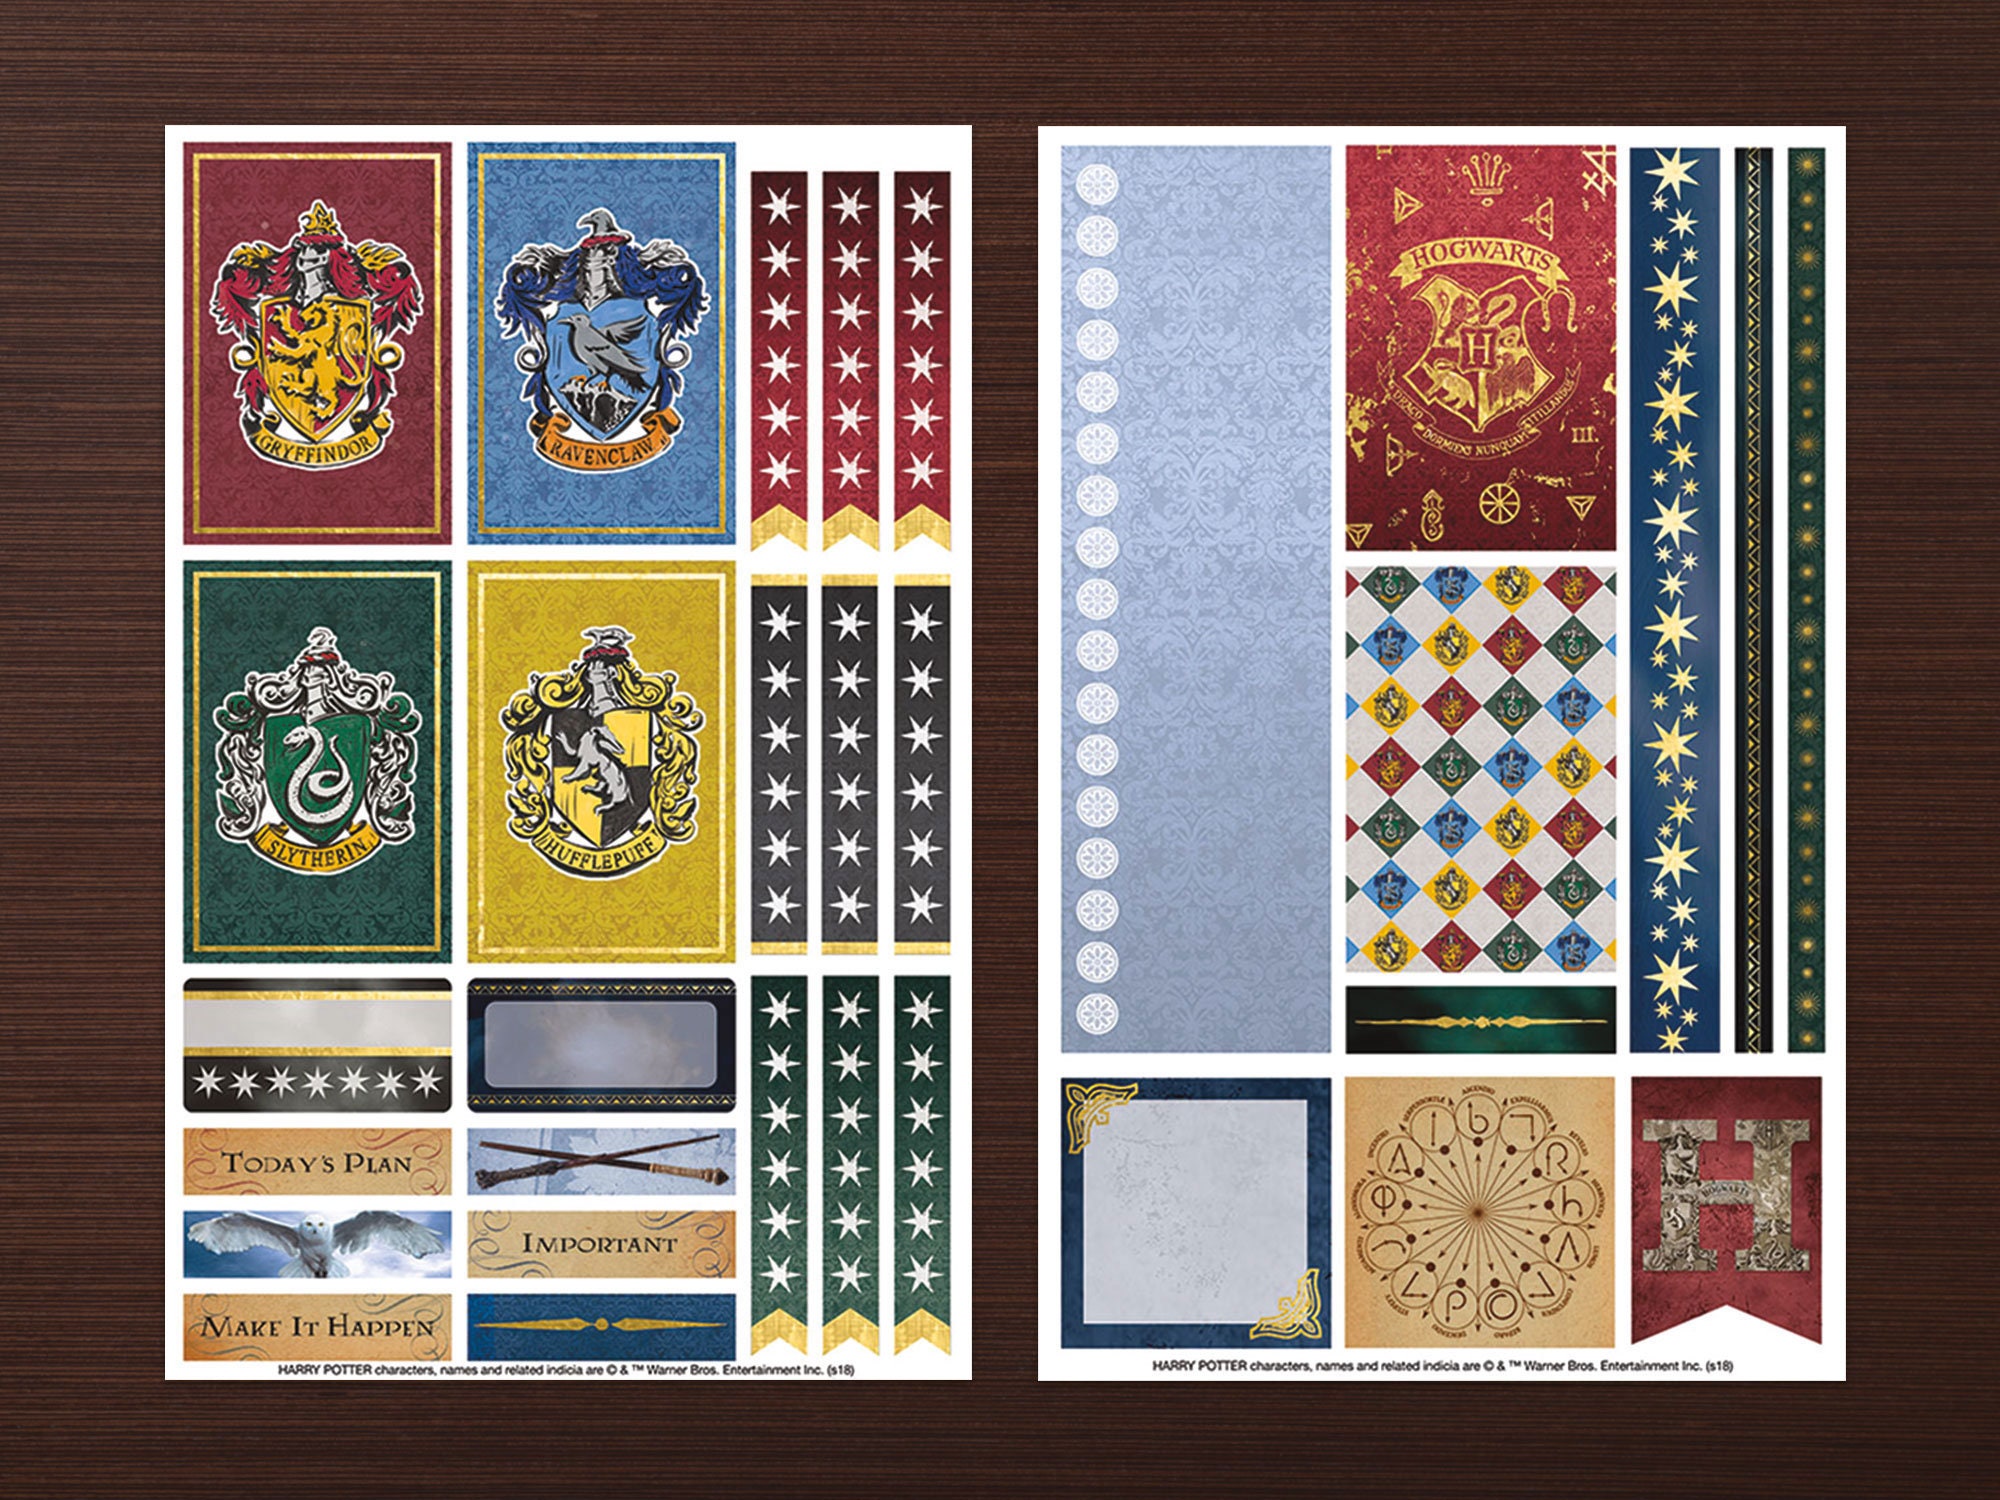 Stickers objetos mágicos de Hogwarts para decorar agendas, planners, etc 